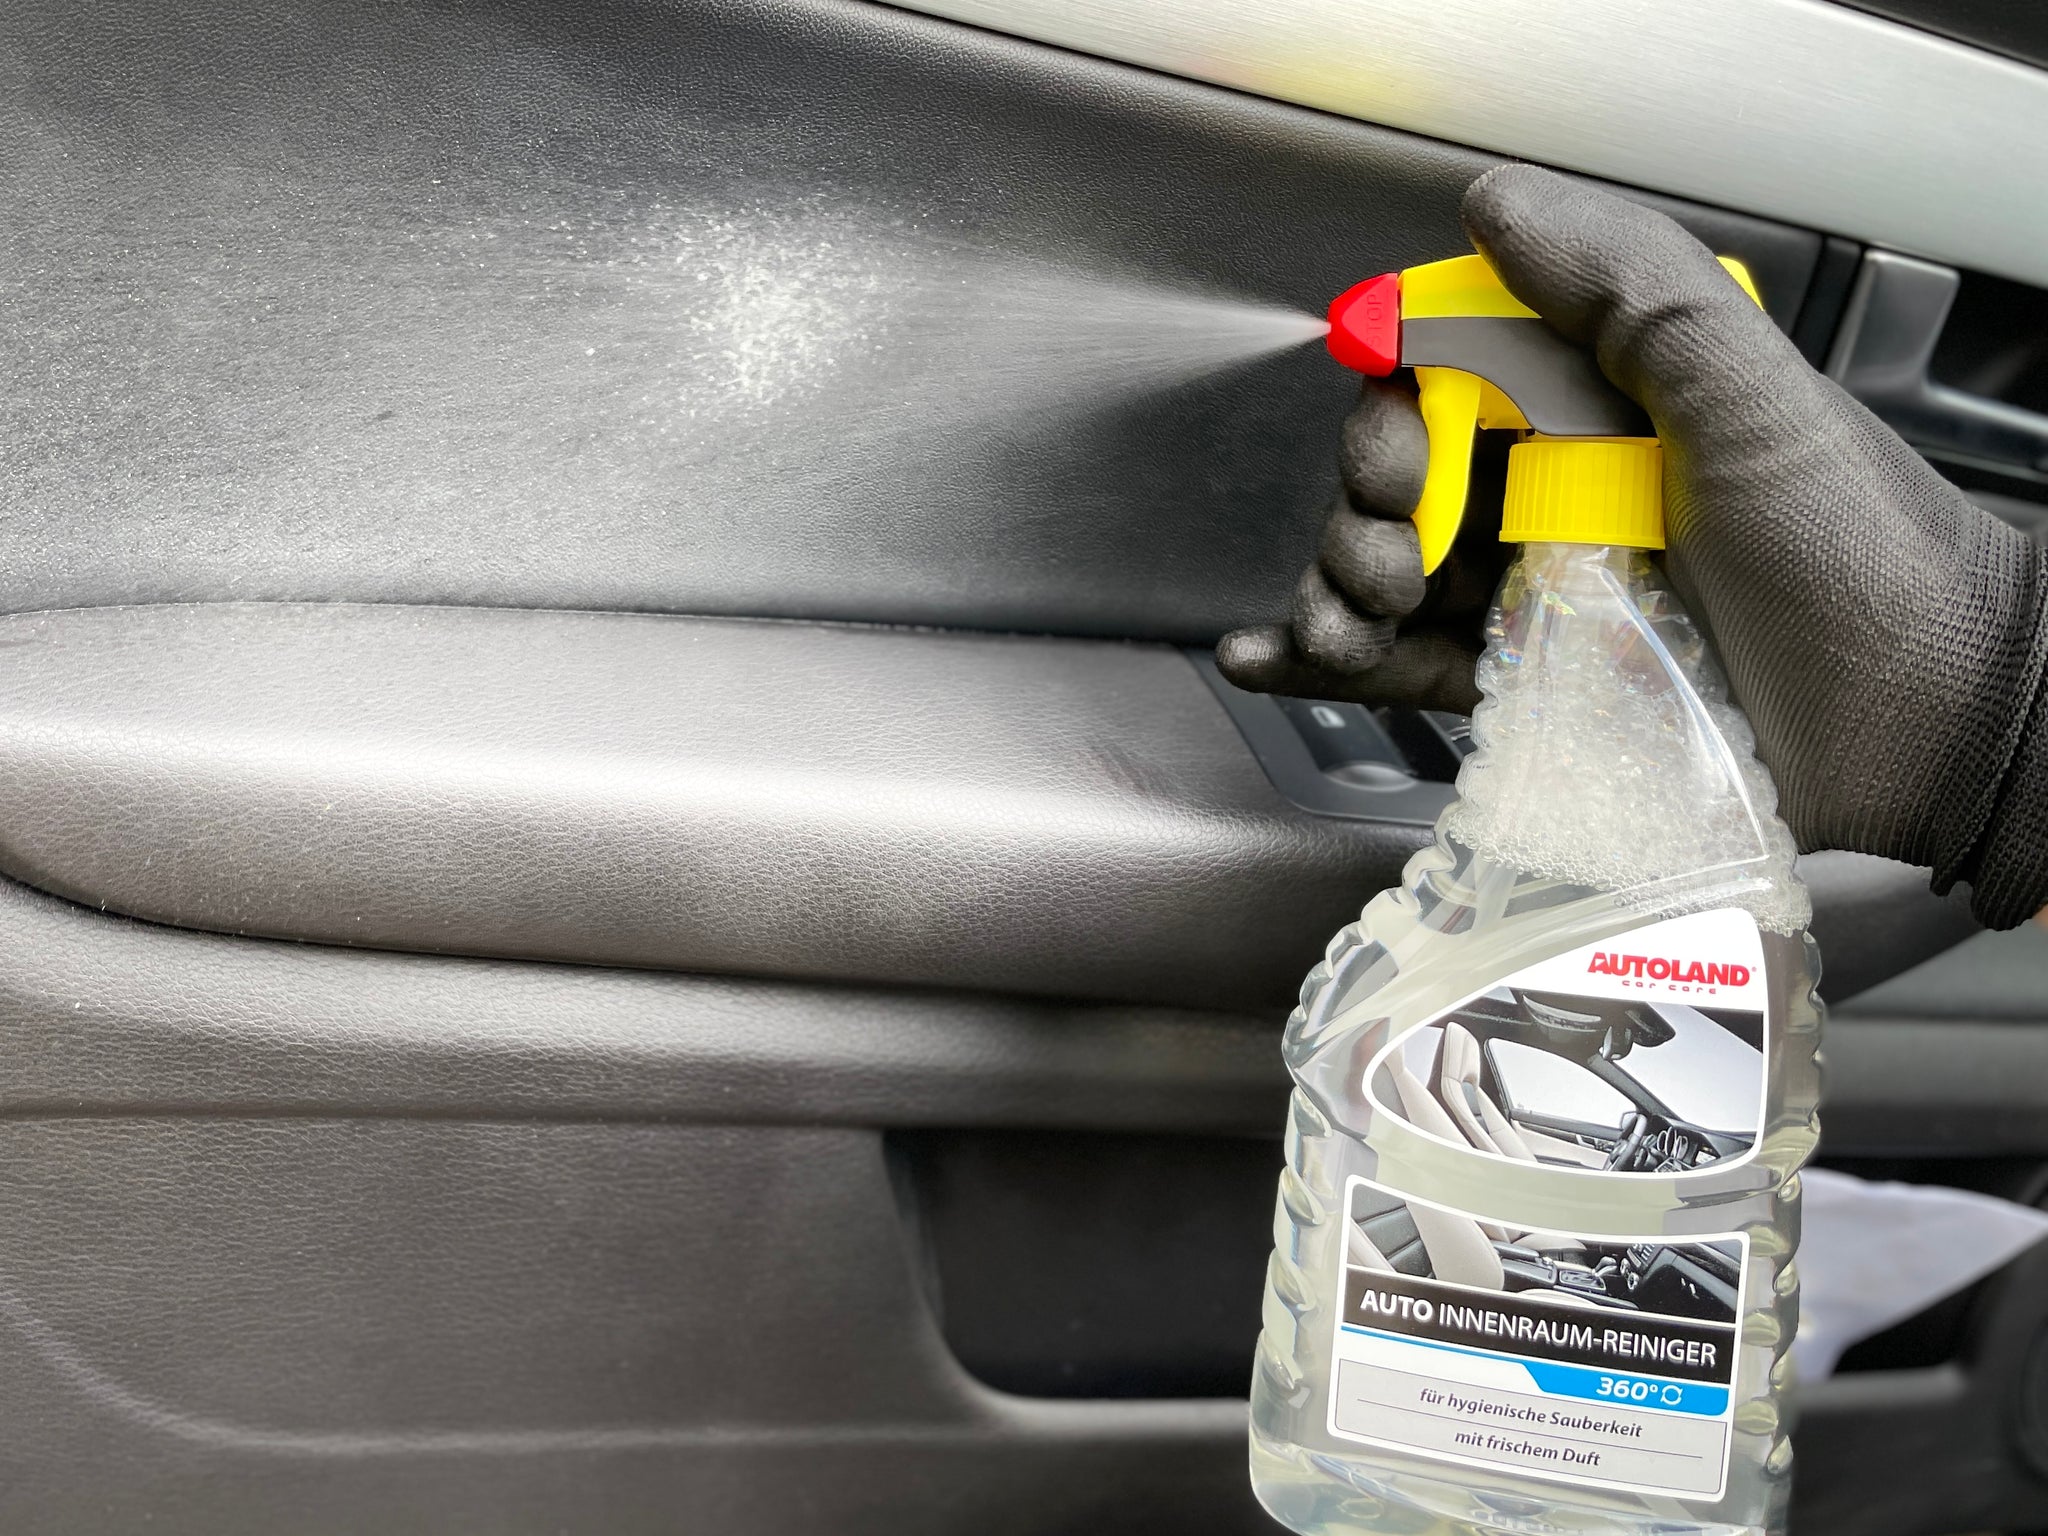 auto innenraum reiniger interior cleaner